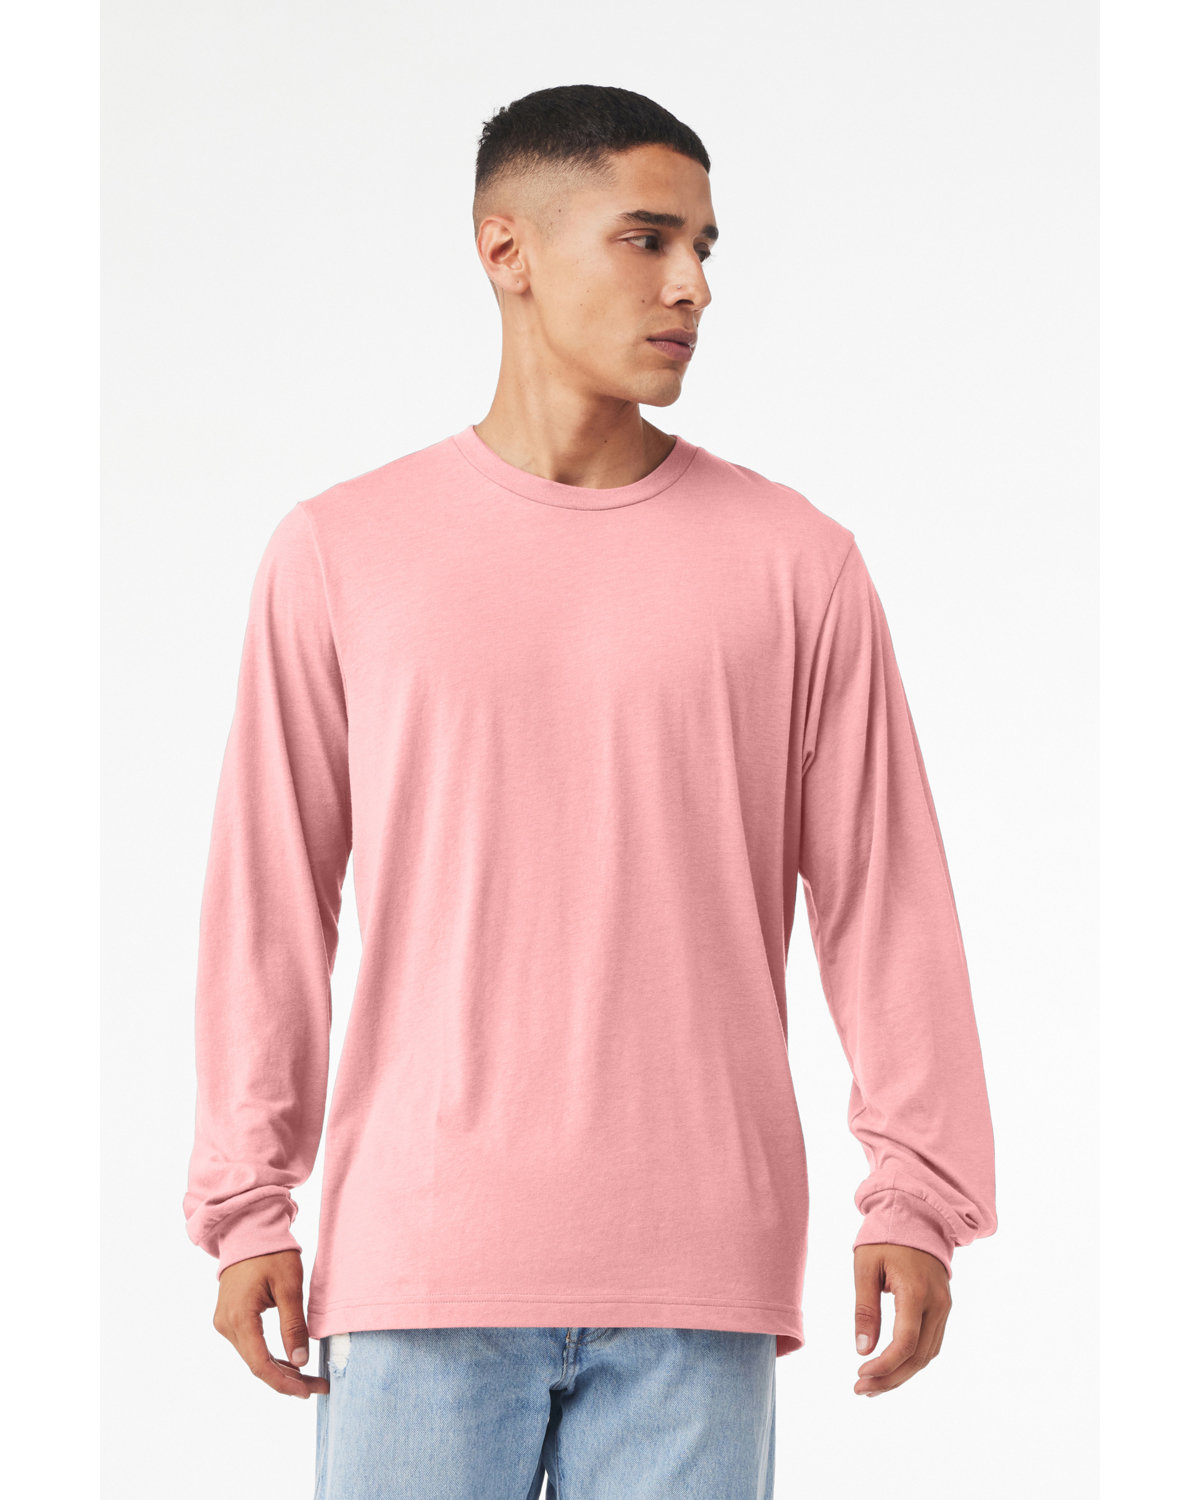 Bella + Canvas Unisex Jersey Long-Sleeve T-Shirt pink 